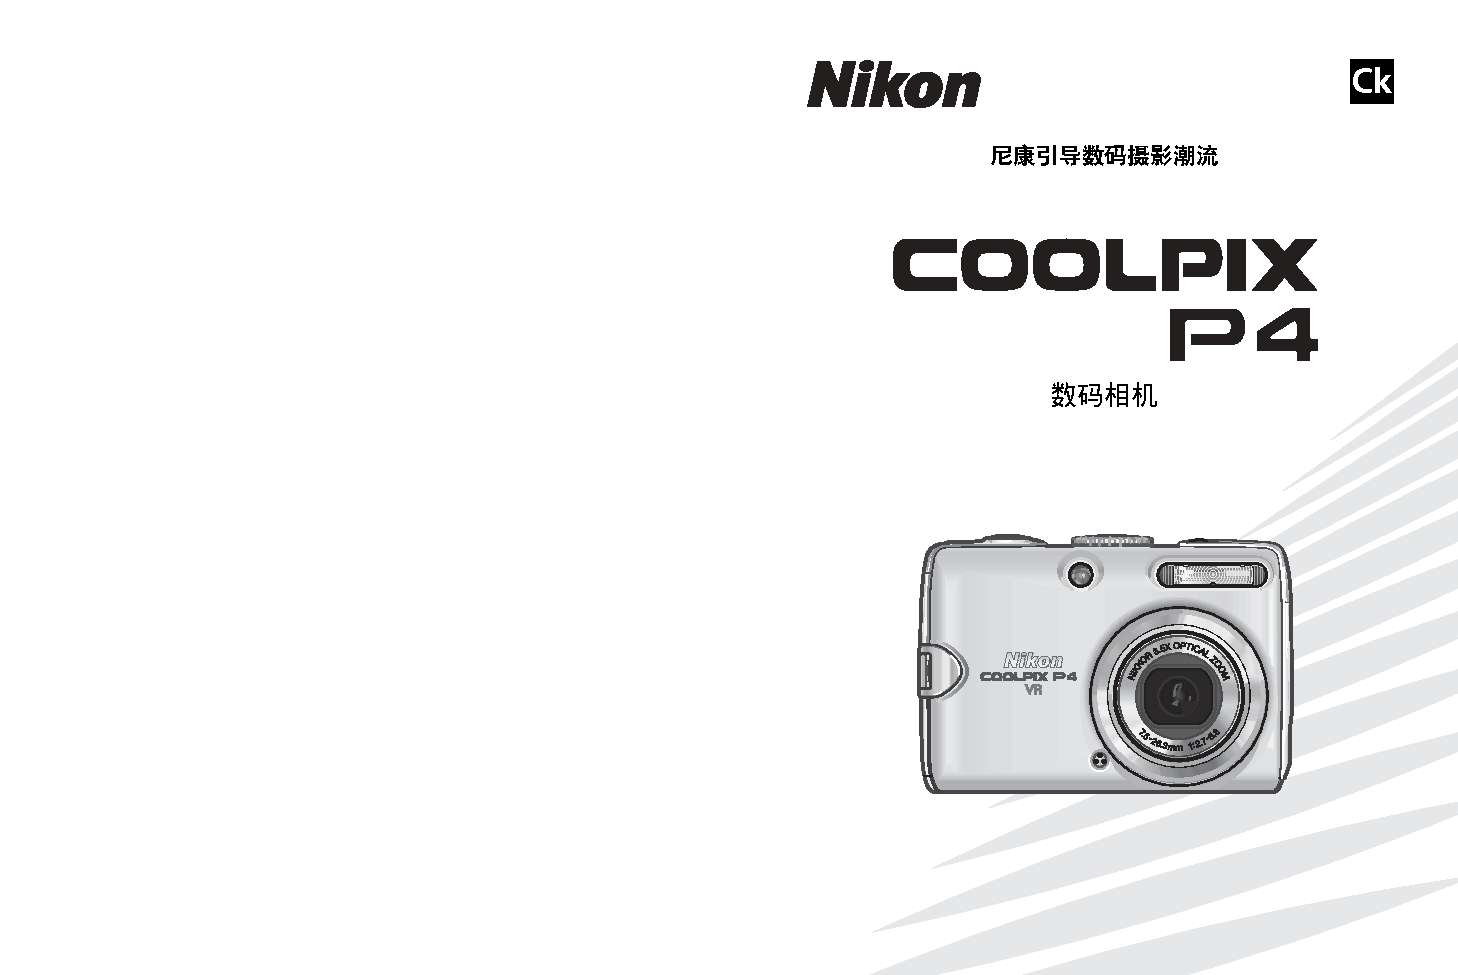 尼康 Nikon COOLPIX P4 用户指南 封面